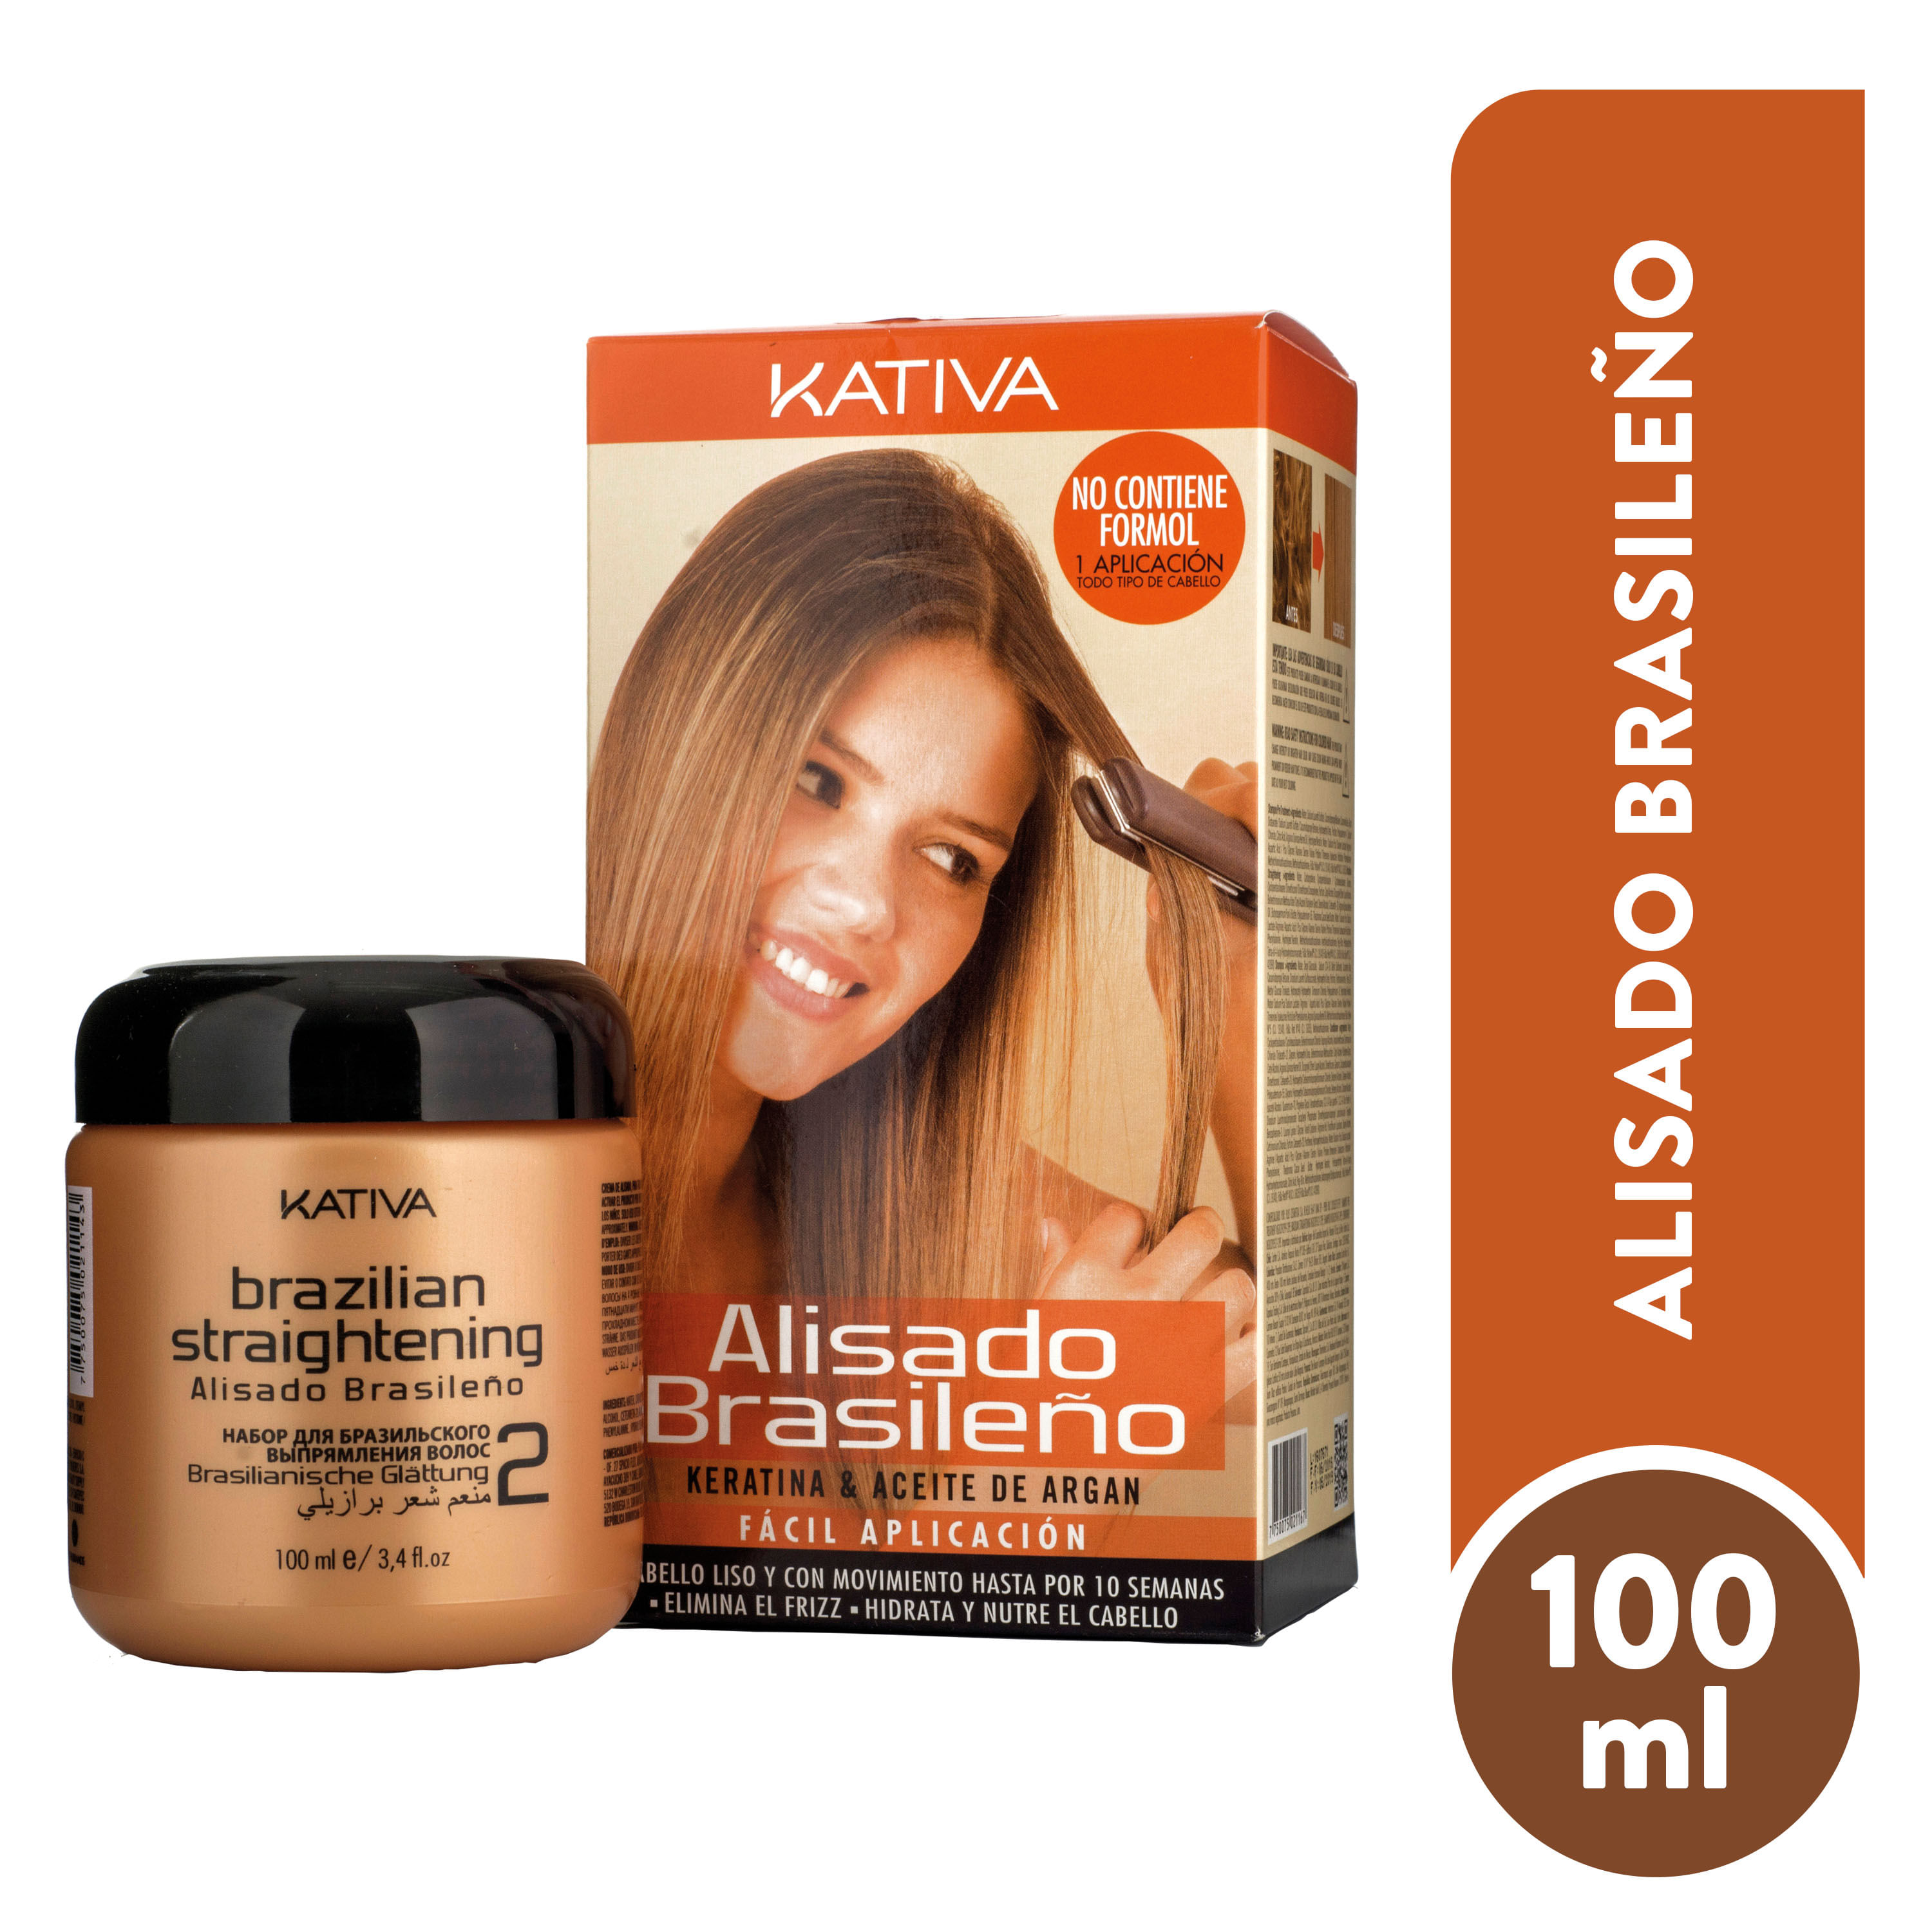 Kit-Kativa-Alisado-Brasil-Keratina-225ml-1-26700